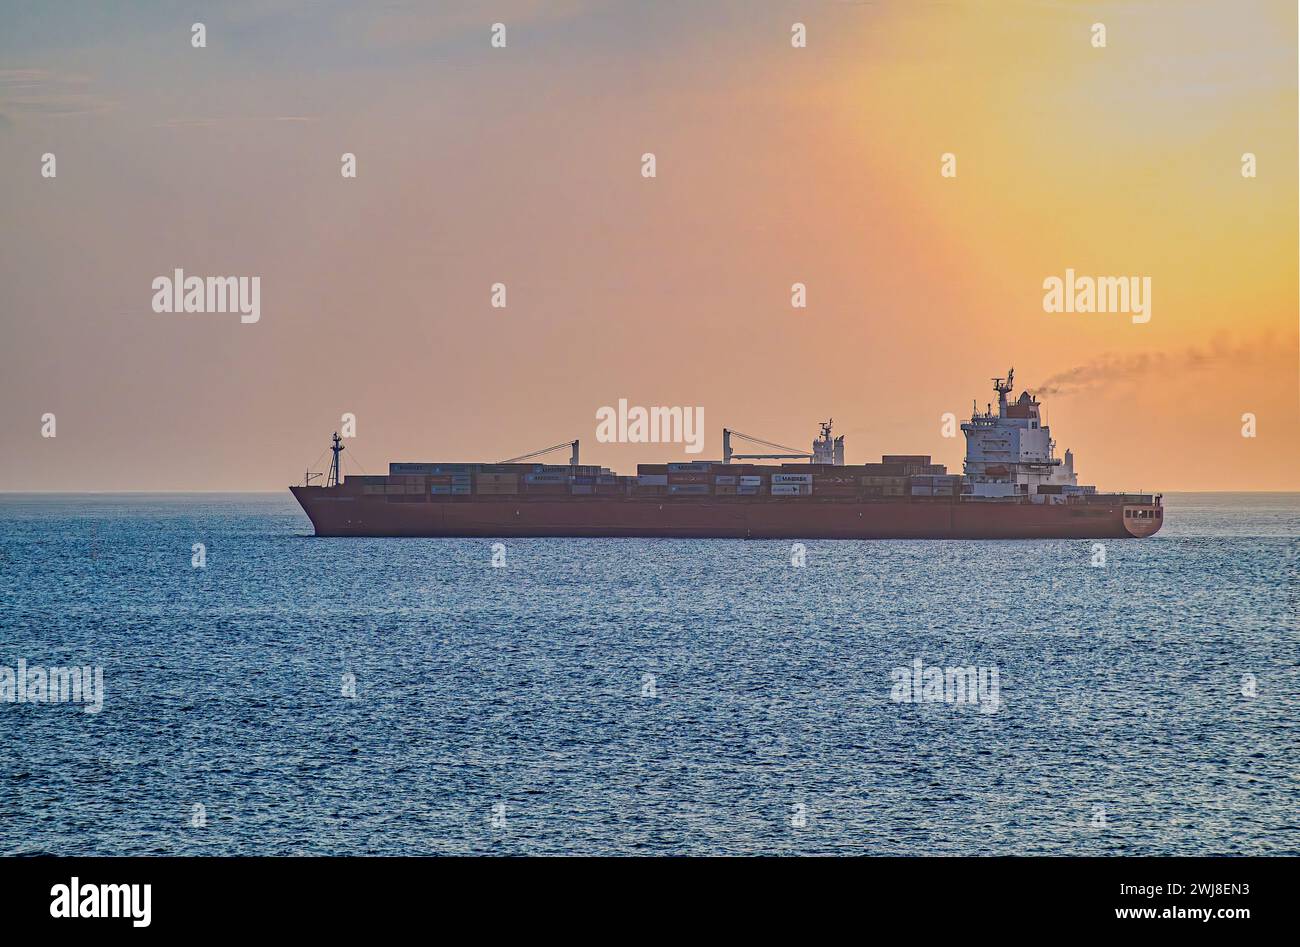 Panamakanal, Panama - 24. Juli 2023: Großes Containerschiff, roter Rumpf, hohe Ladung, wartet auf dem Pazifik im Morgenlicht auf blauem Wasser Stockfoto